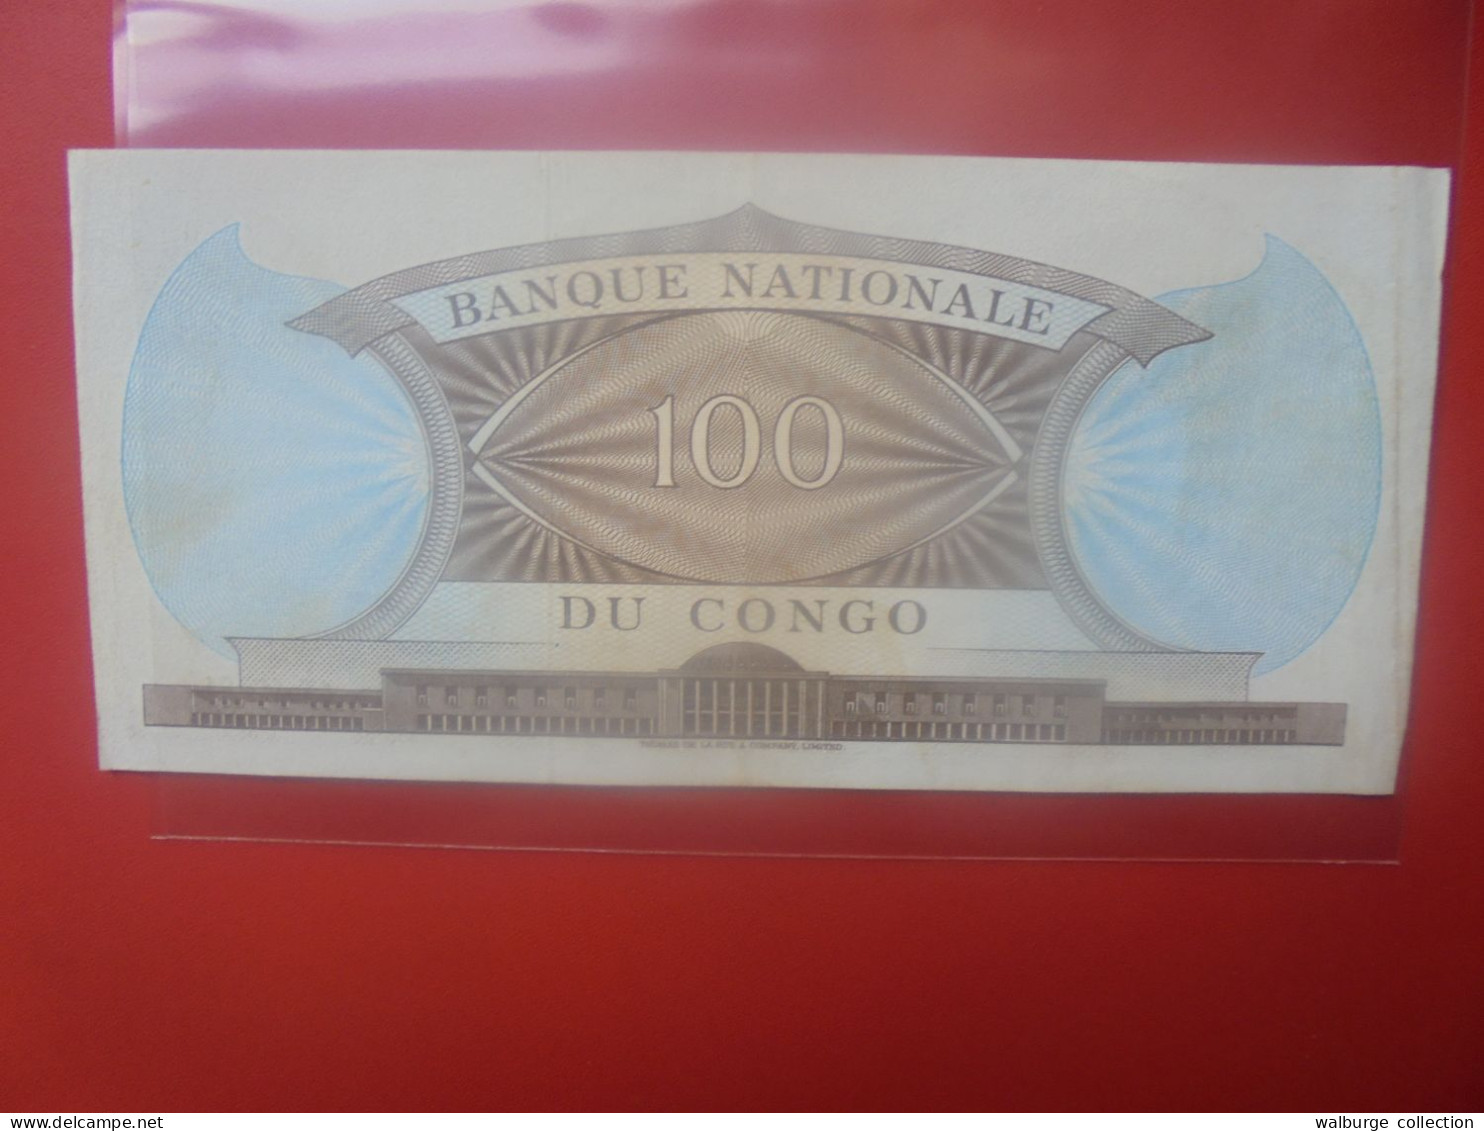 EX-CONGO BELGE 100 FRANCS 1961 Circuler (B.33) - Belgian Congo Bank